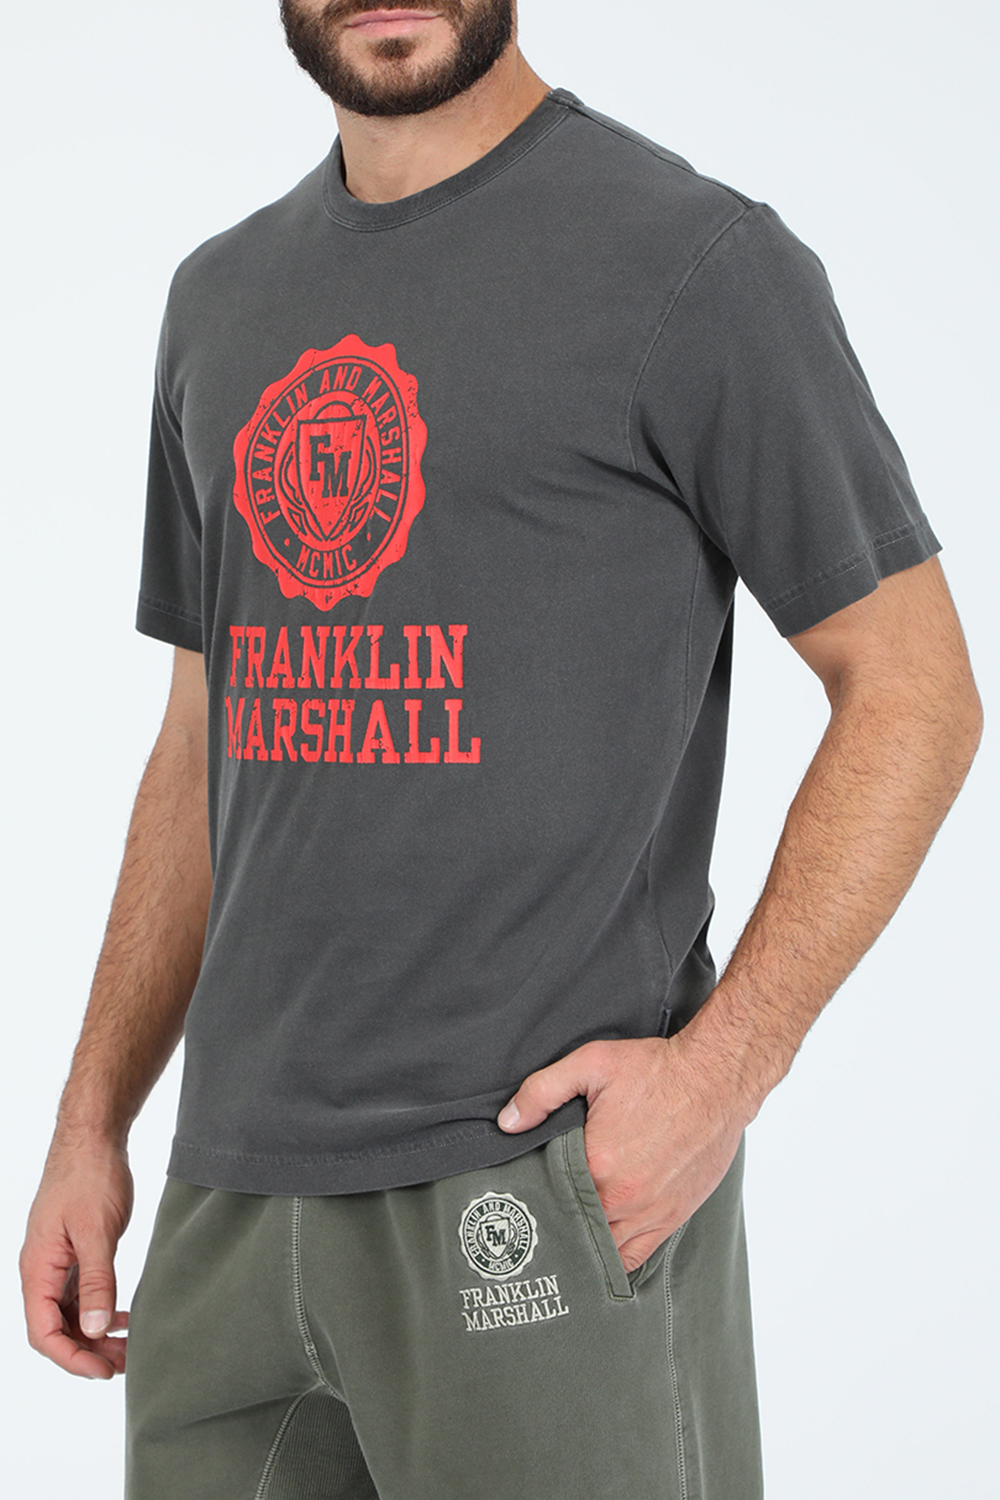 Ανδρικά/Ρούχα/Μπλούζες/Κοντομάνικες FRANKLIN & MARSHALL - Ανδρική μπλούζα FRANKLIN & MARSHALL γκρι